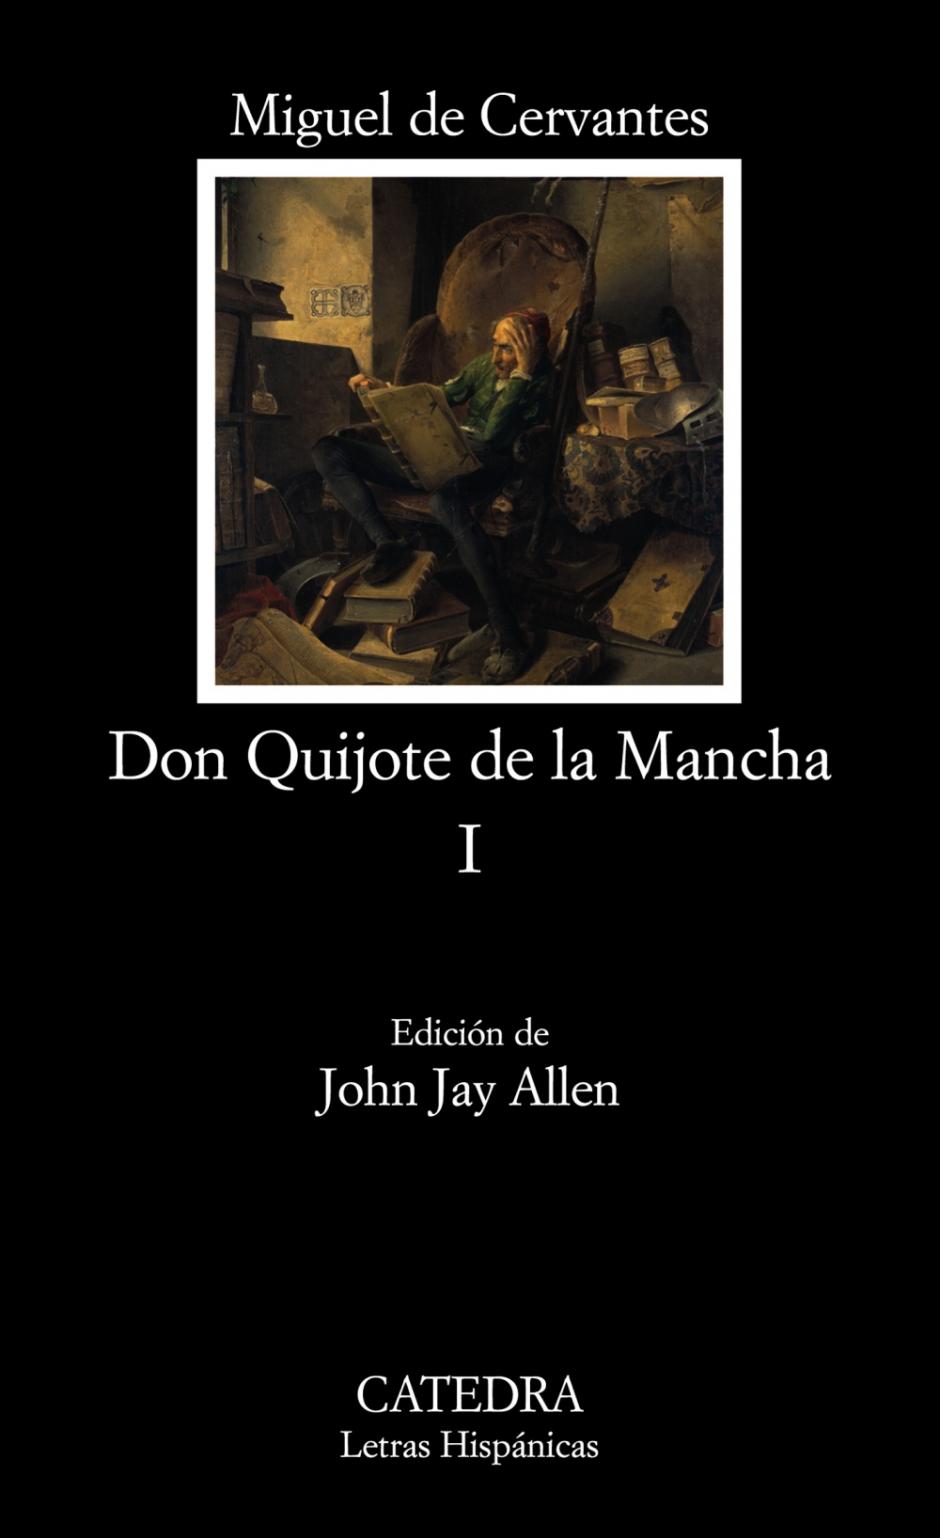 Portada de «Don Quijote de la Mancha» de Miguel de Cervantes